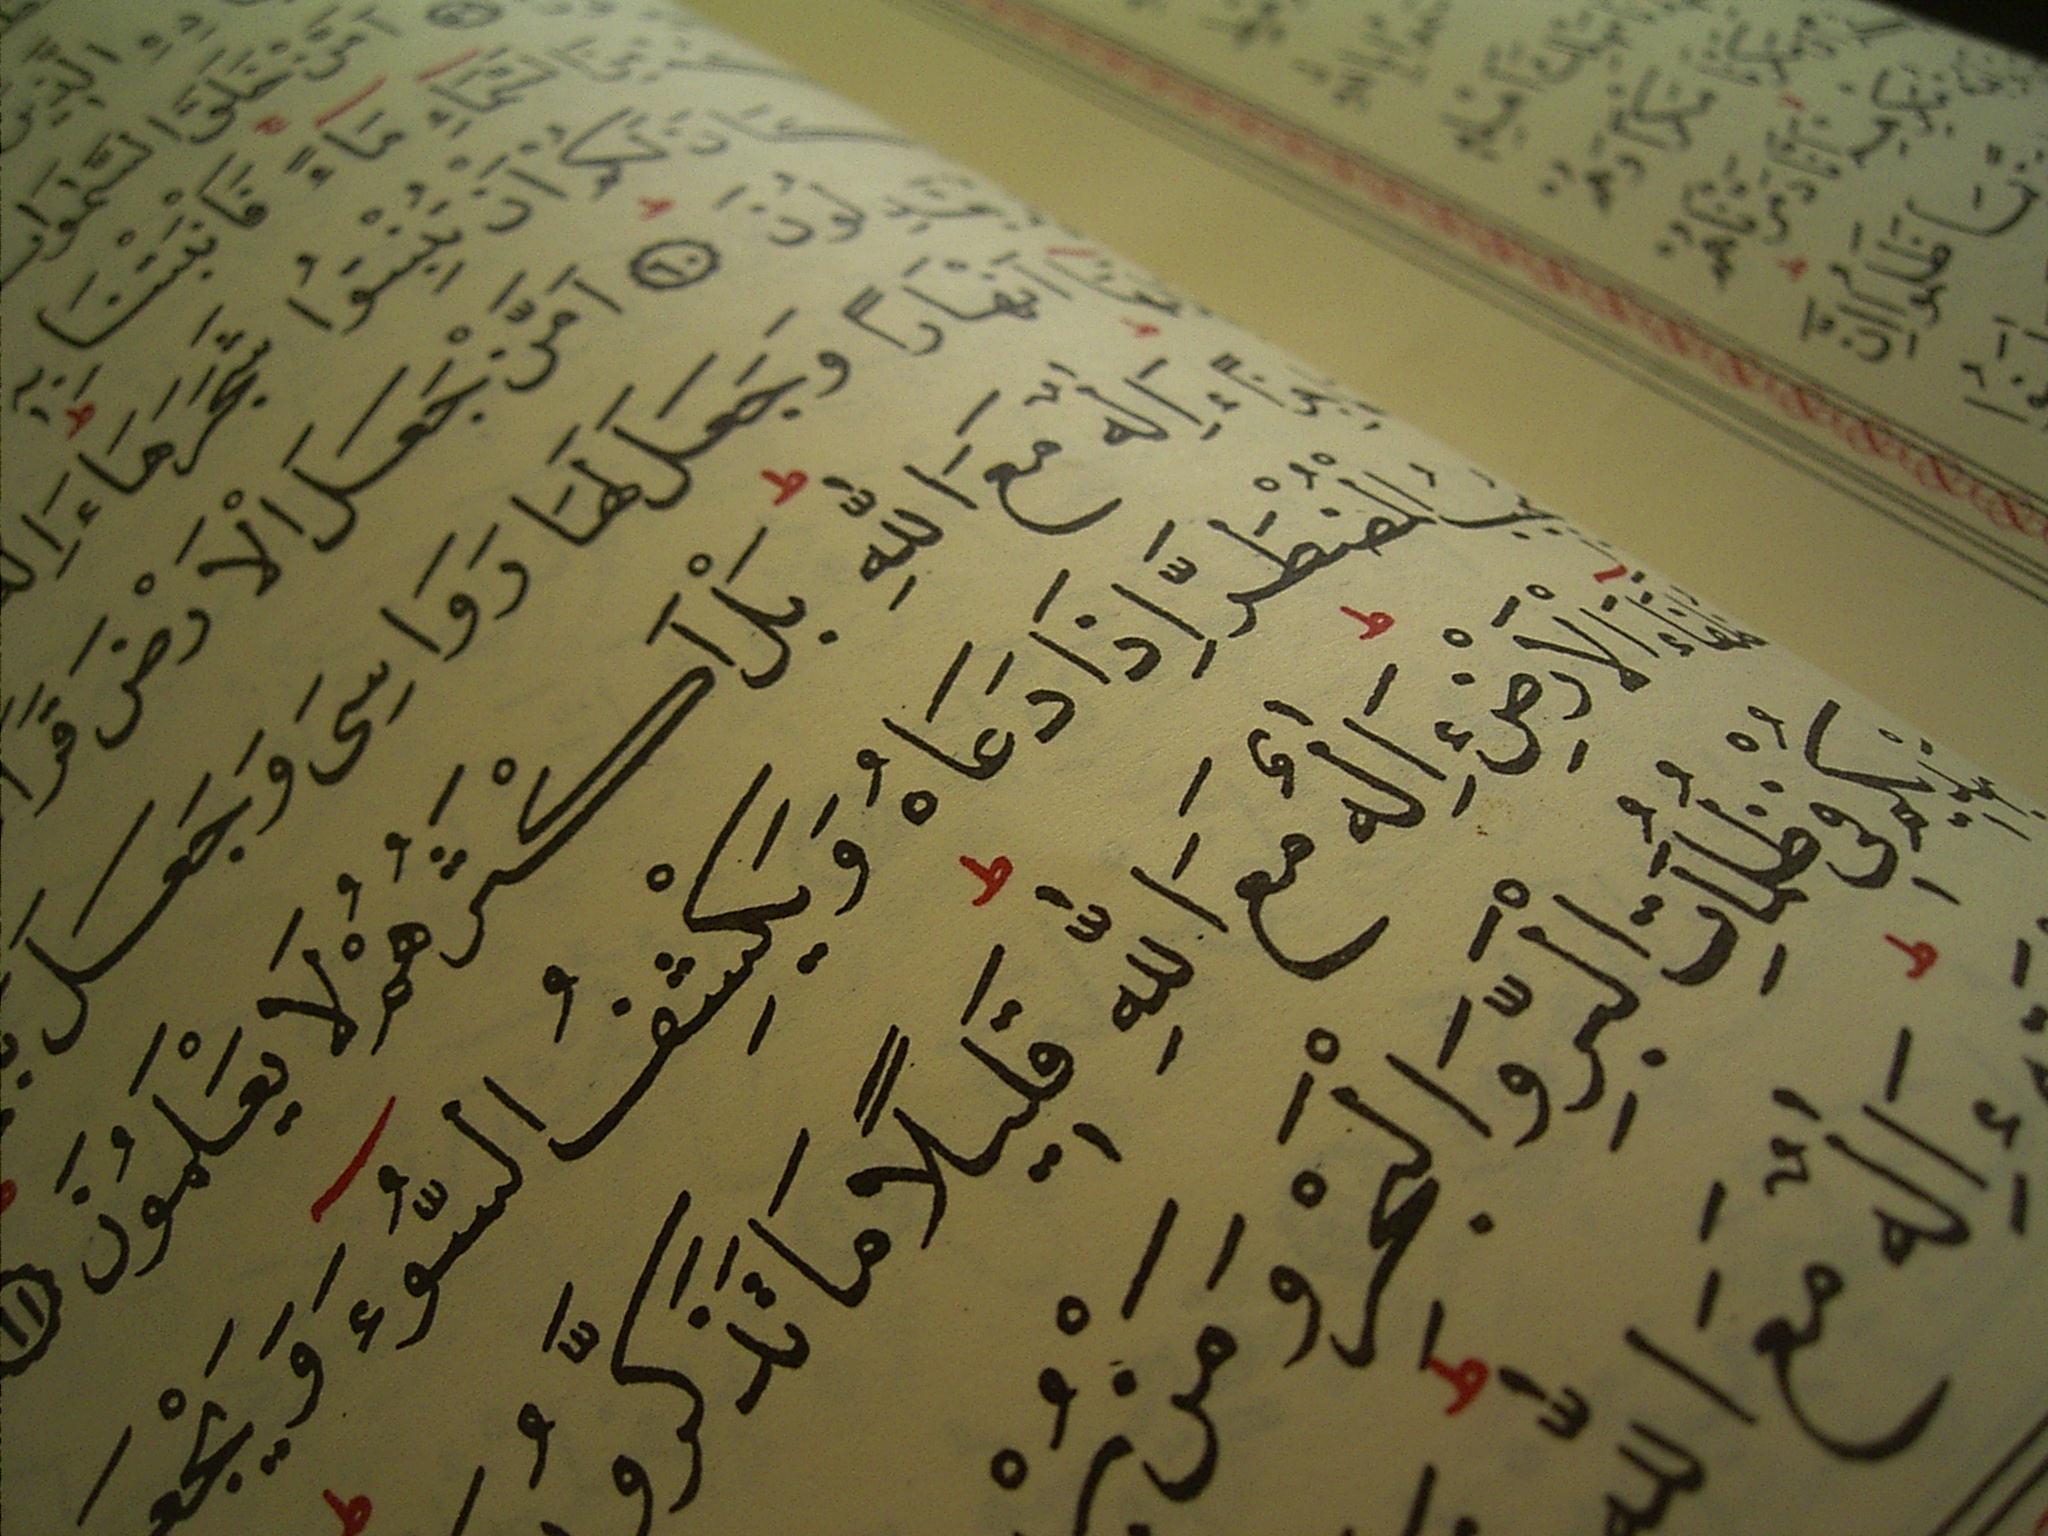 Quran text closeup